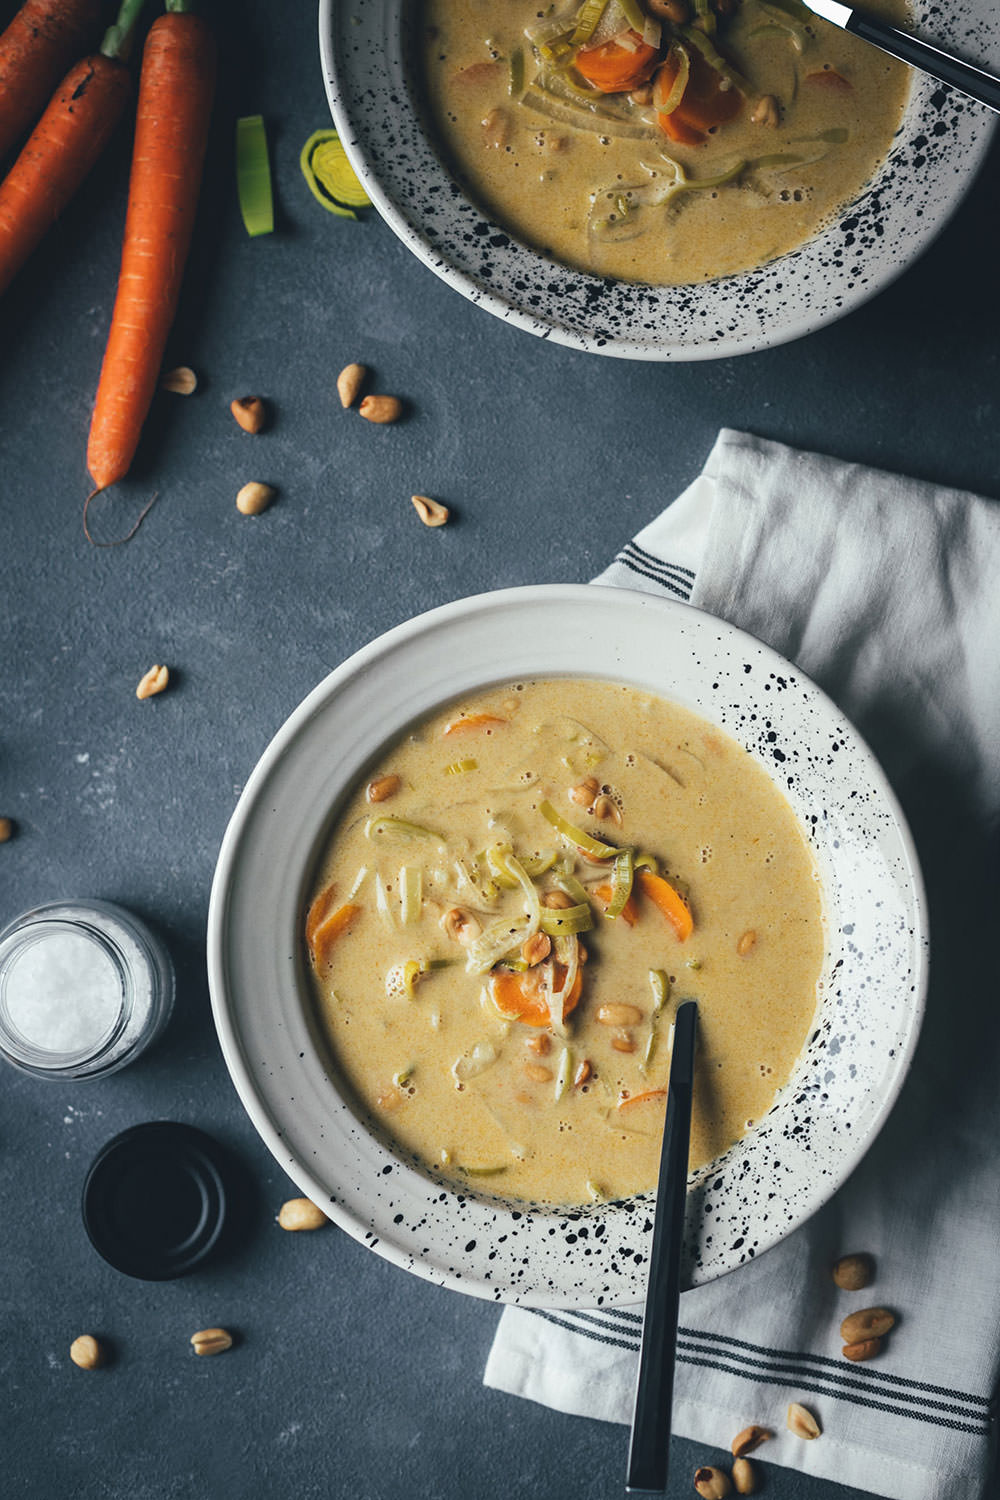 Rezept für würzige Erdnuss-Suppe mit Currypaste, Gemüse und Kokosmilch | wärmend und wohltuend in den kalten Monaten | moeyskitchen.com #suppe #soup #erdnusssuppe #curry #currypaste #rezept #vegetarisch #foodblogger